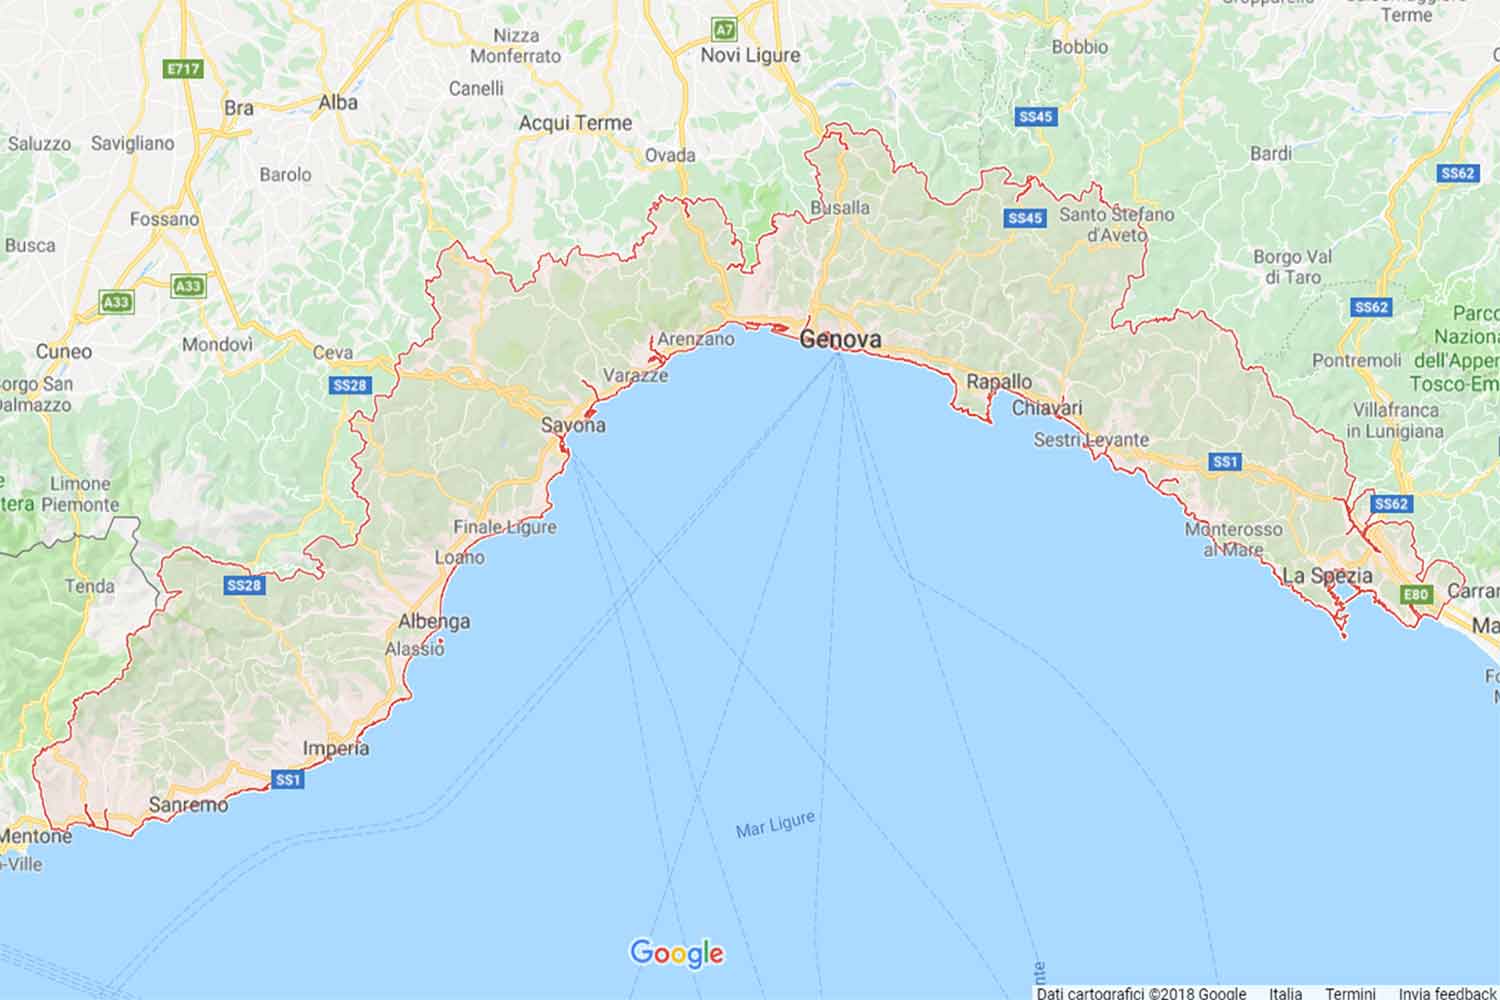 Liguria - Savona - Onzo Preventivi Veloci google maps